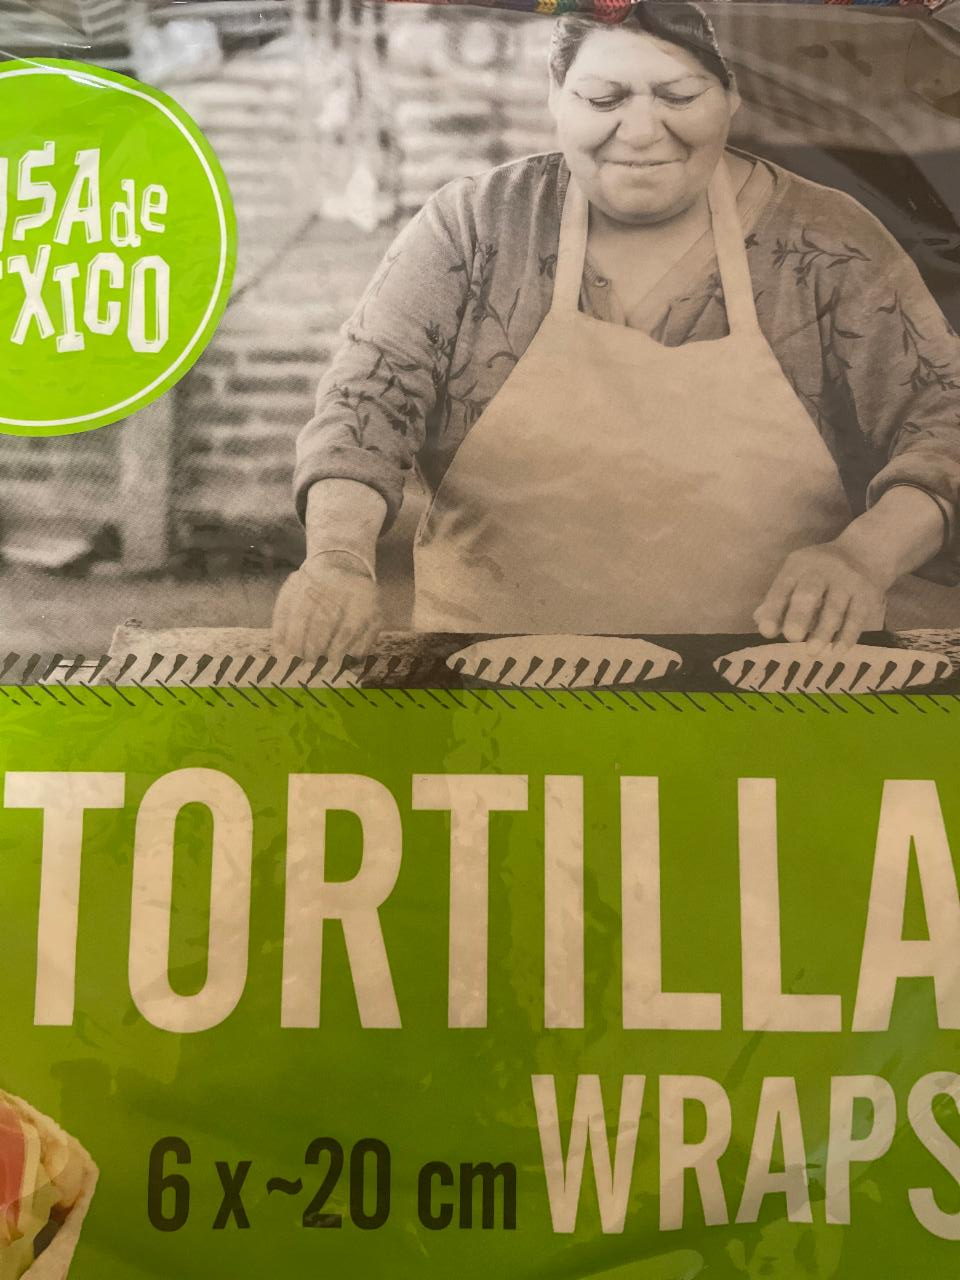 Fotografie - Tortilla wraps Casa de Mexico